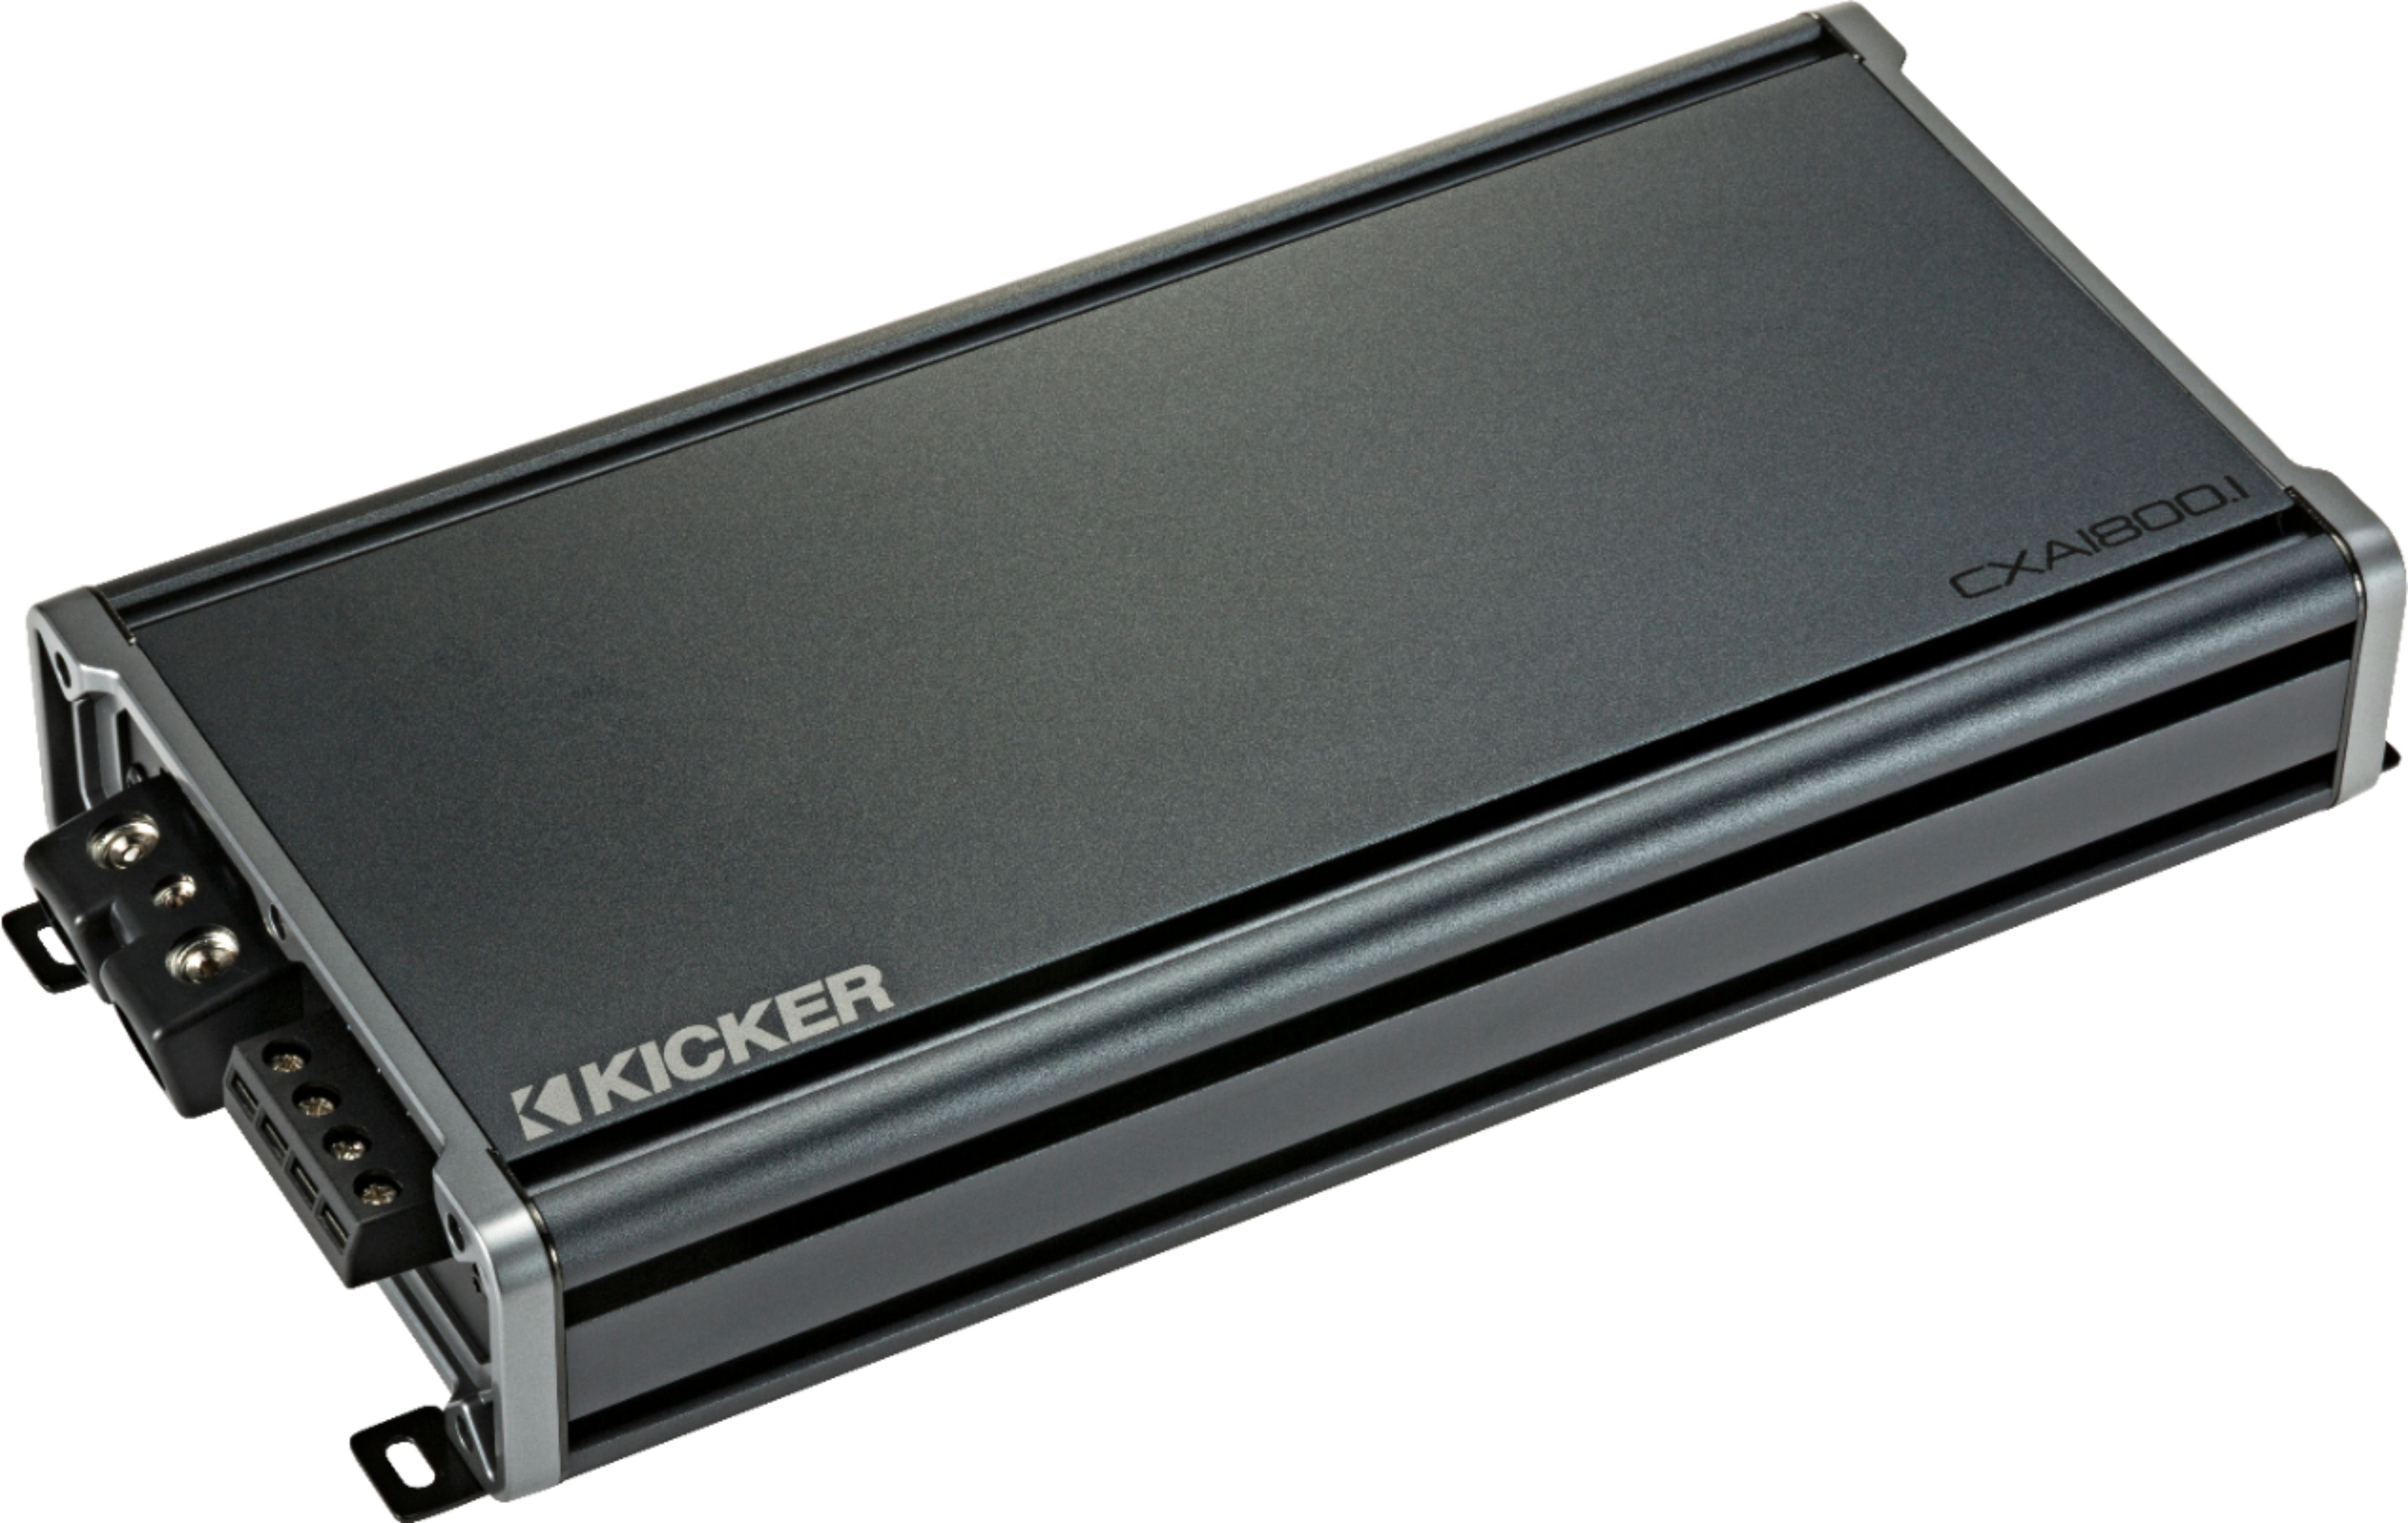 Angle View: AudioControl - 800W Monoblock Class D Amplifier - Black